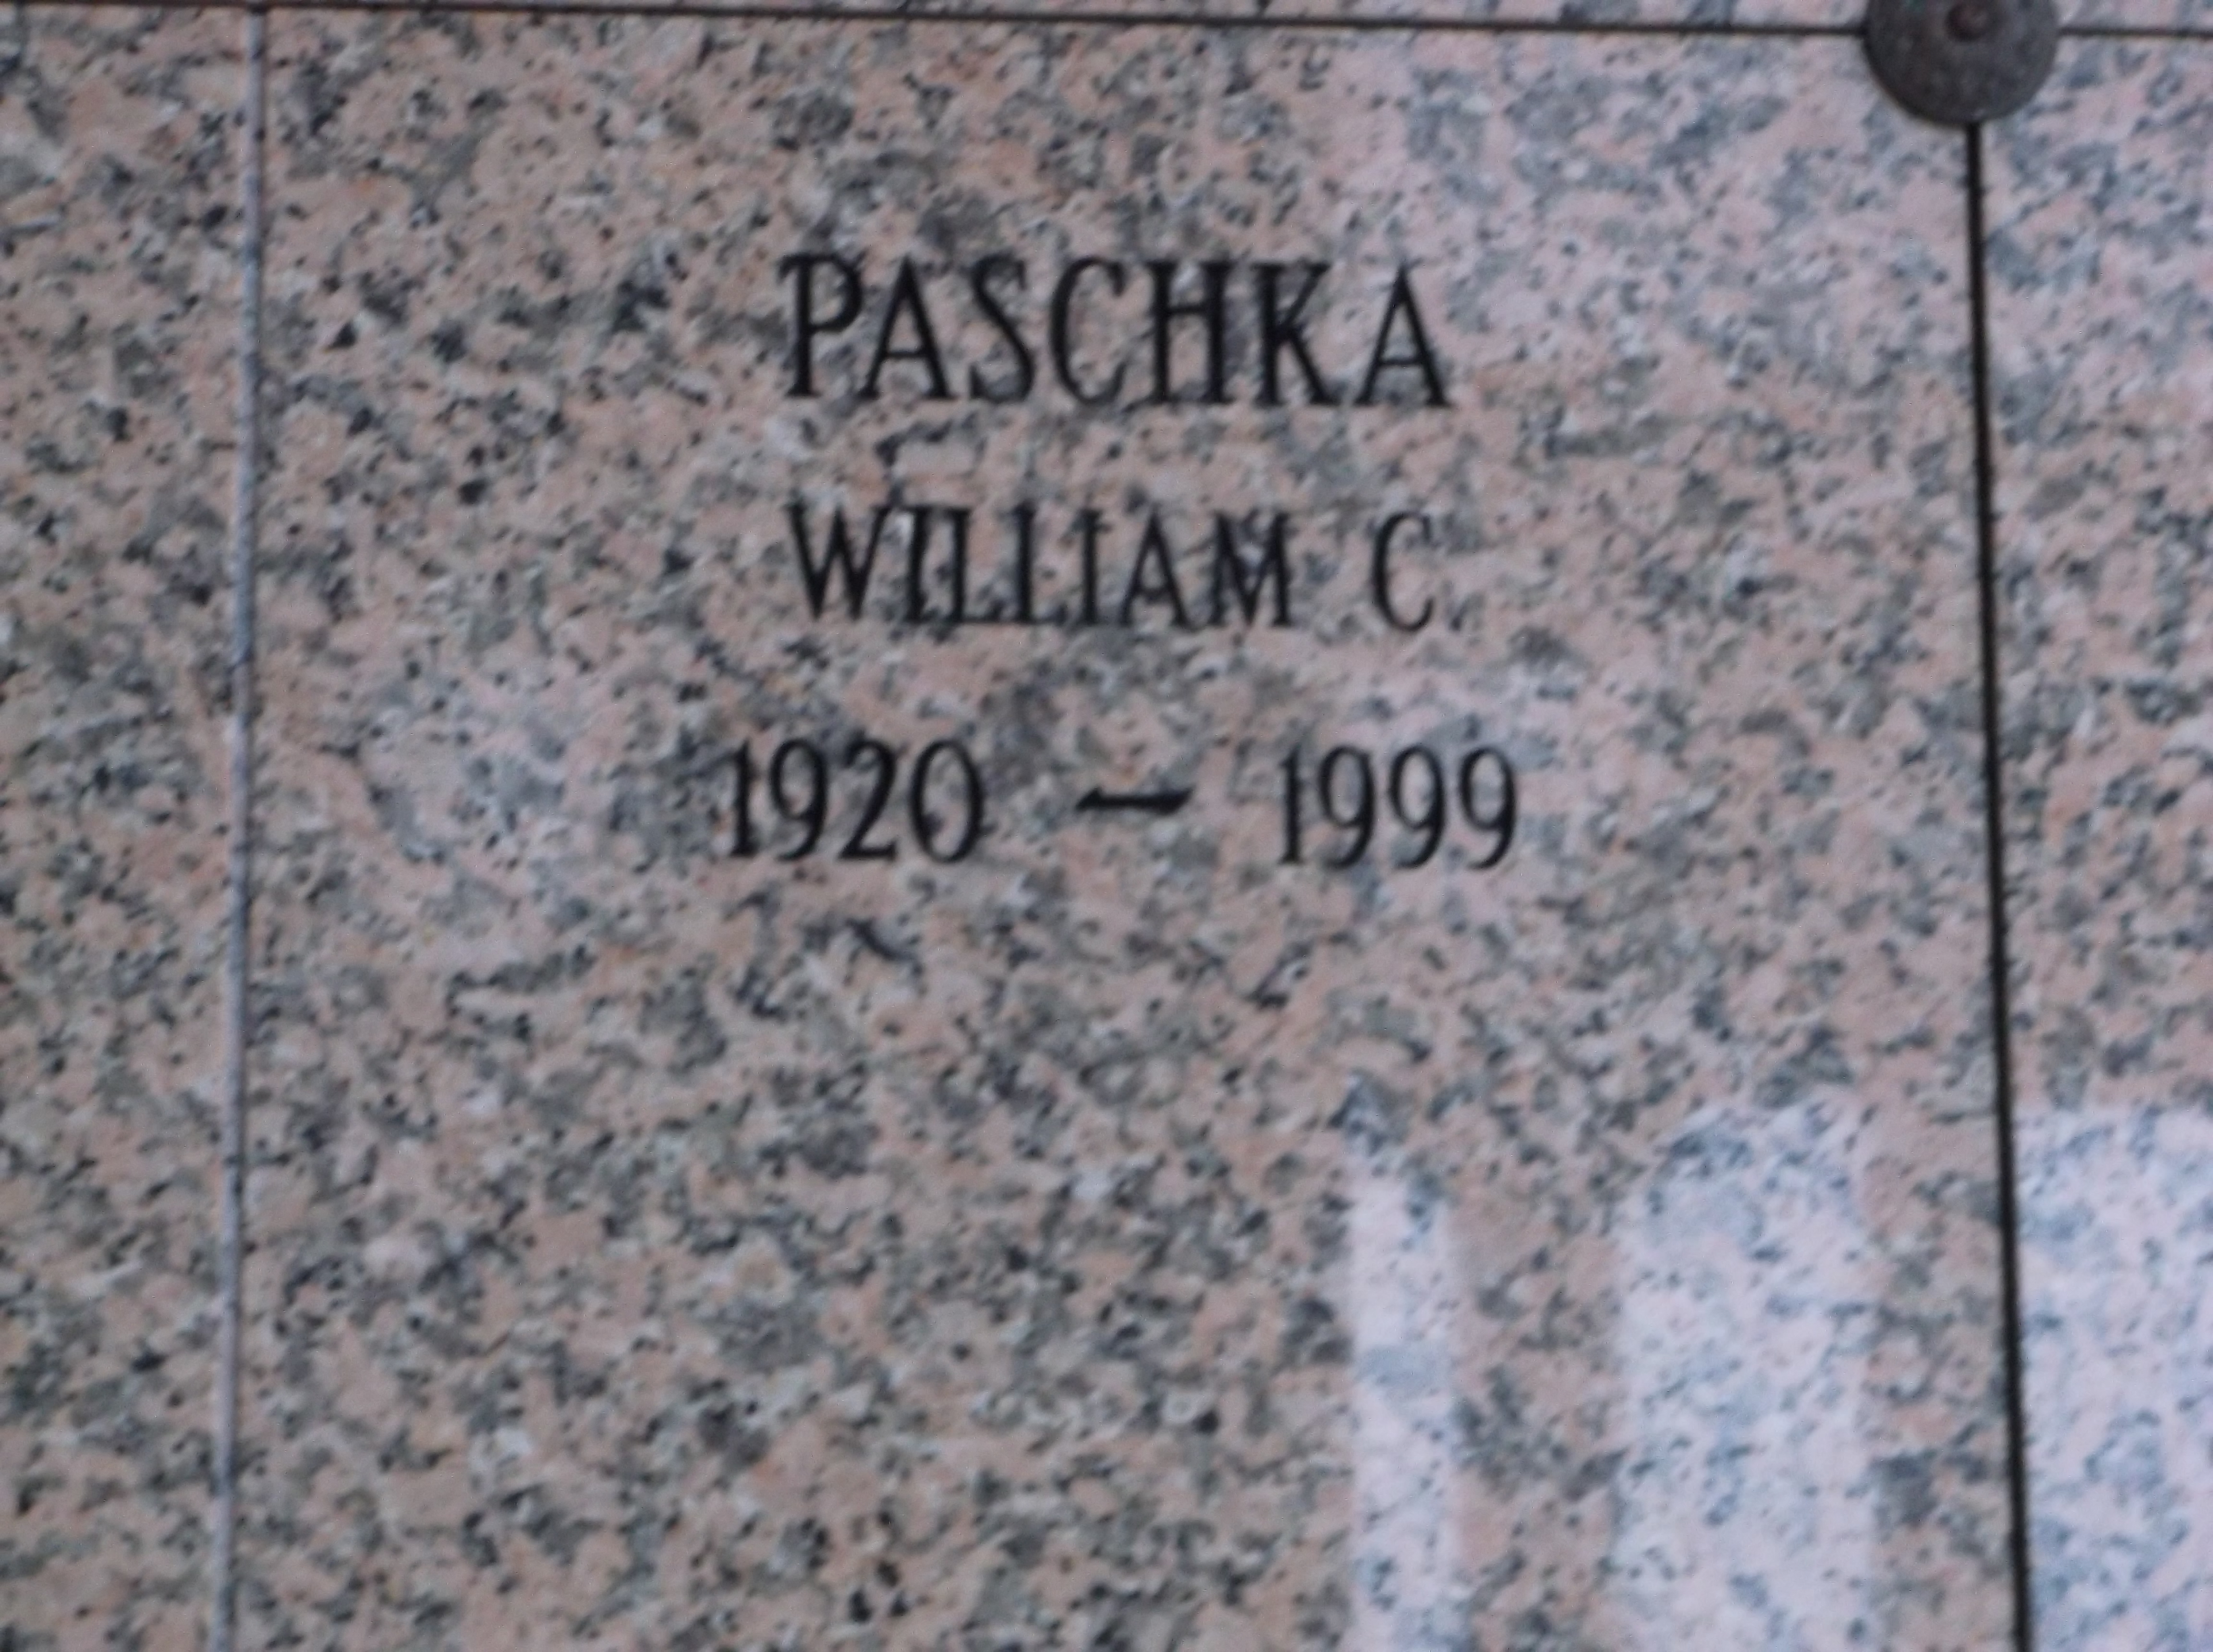 William C Paschka